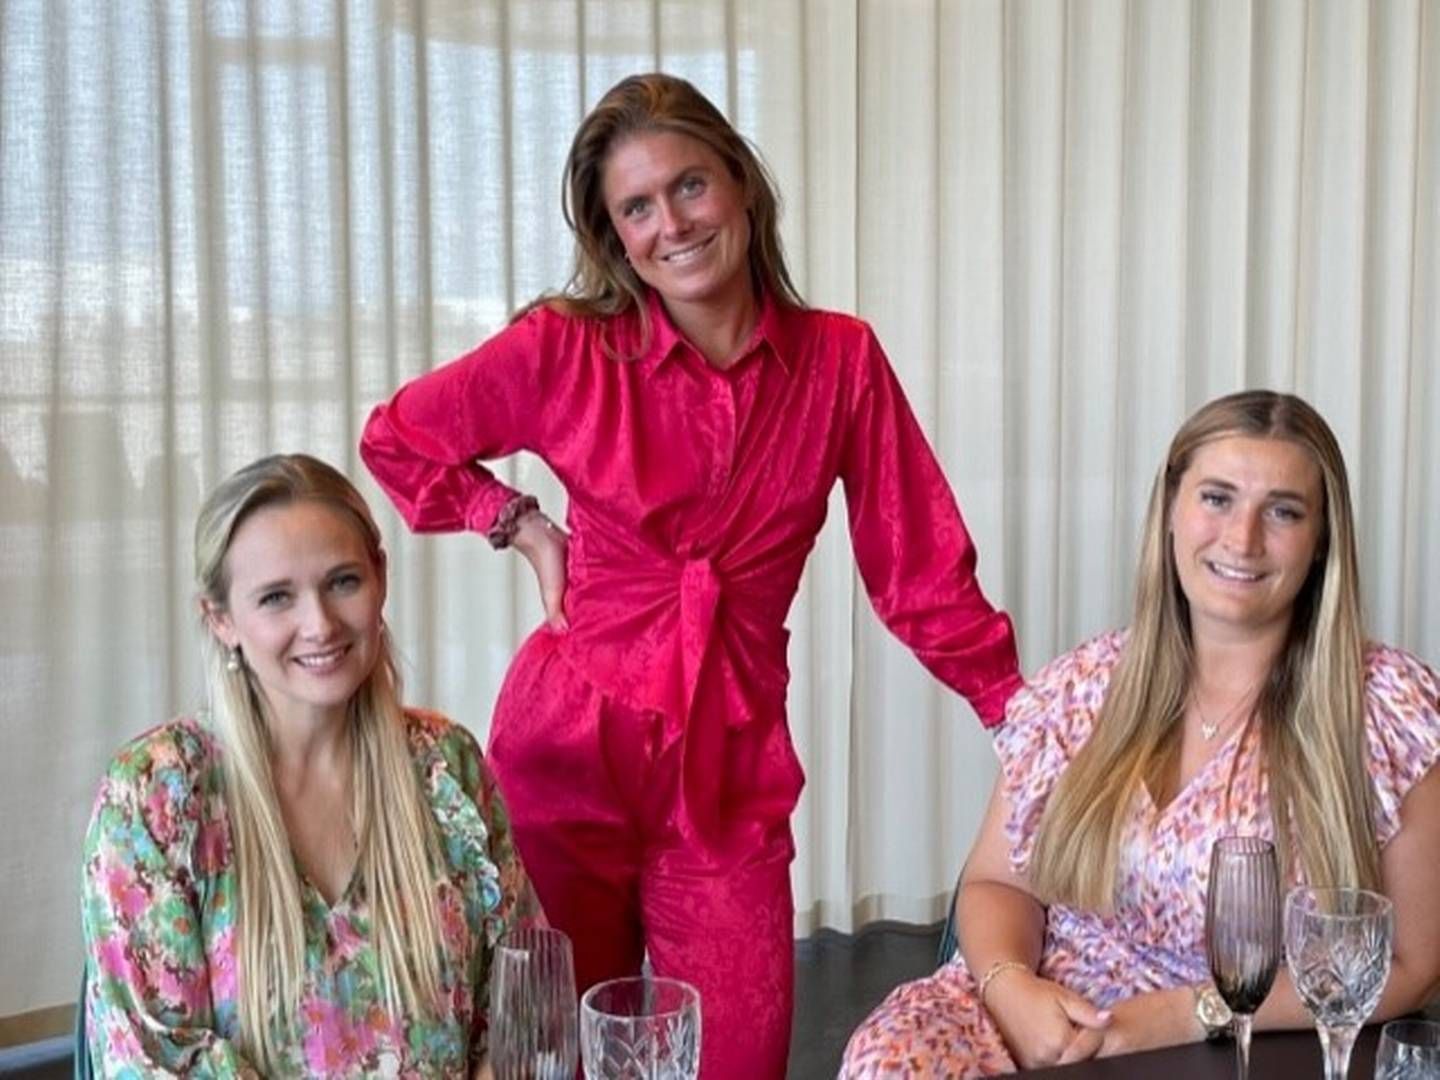 Fra venstre ses Michala Sehested, Trine Christensen og Simone Dahl som sammen har stiftet kvindenetværket Reals: ”Vi siger ikke, at der skal være færre mænd, der skal bare være en bedre balance, end der er nu,” lyder det bl.a. fra en af de tre stiftere. | Photo: PR / Reals